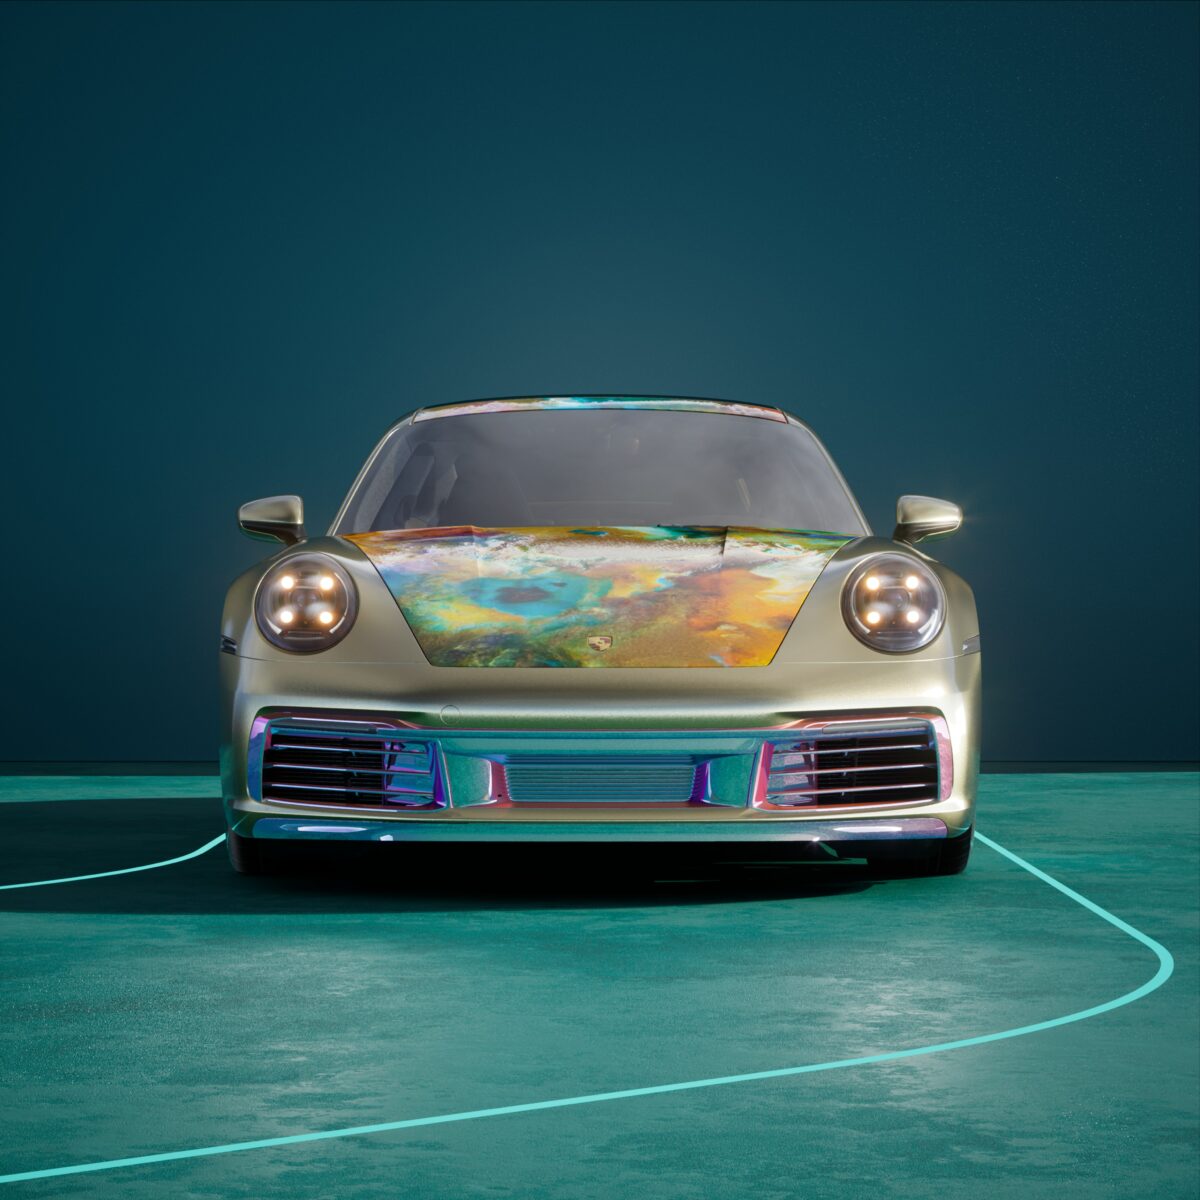 Camino de estilo de vida de Porsche NFT